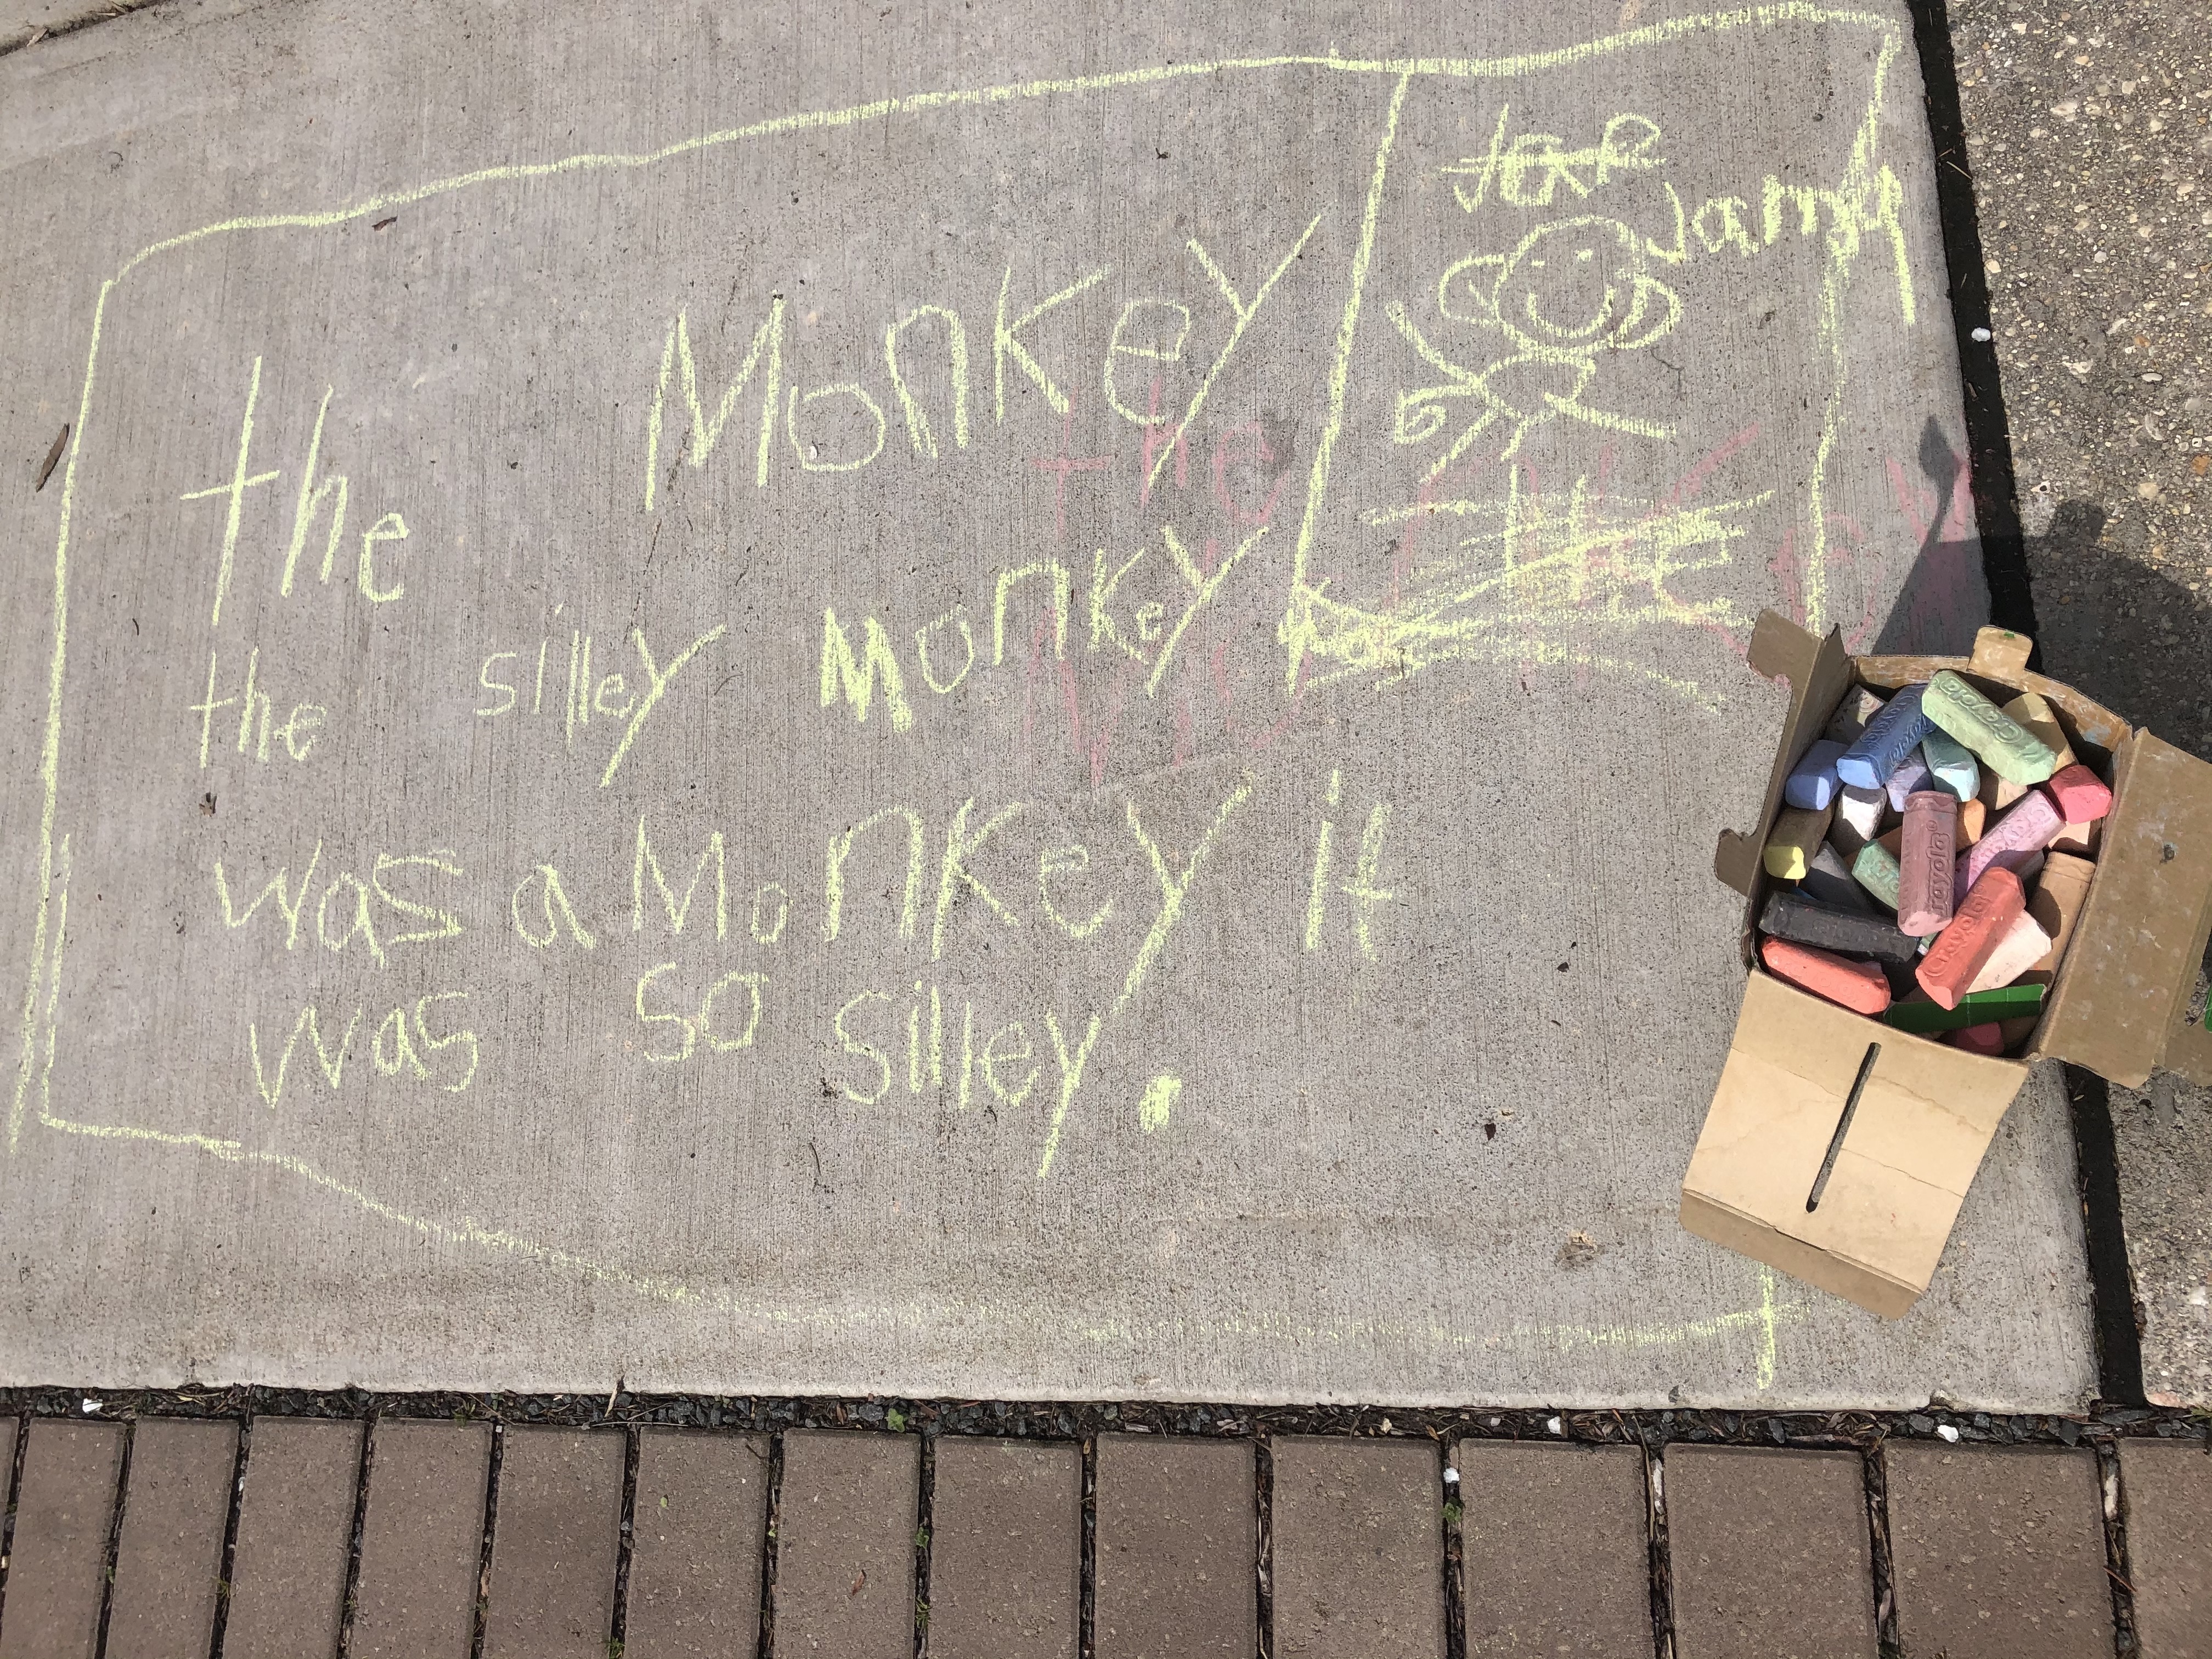 Chalk writing on the sidewalk